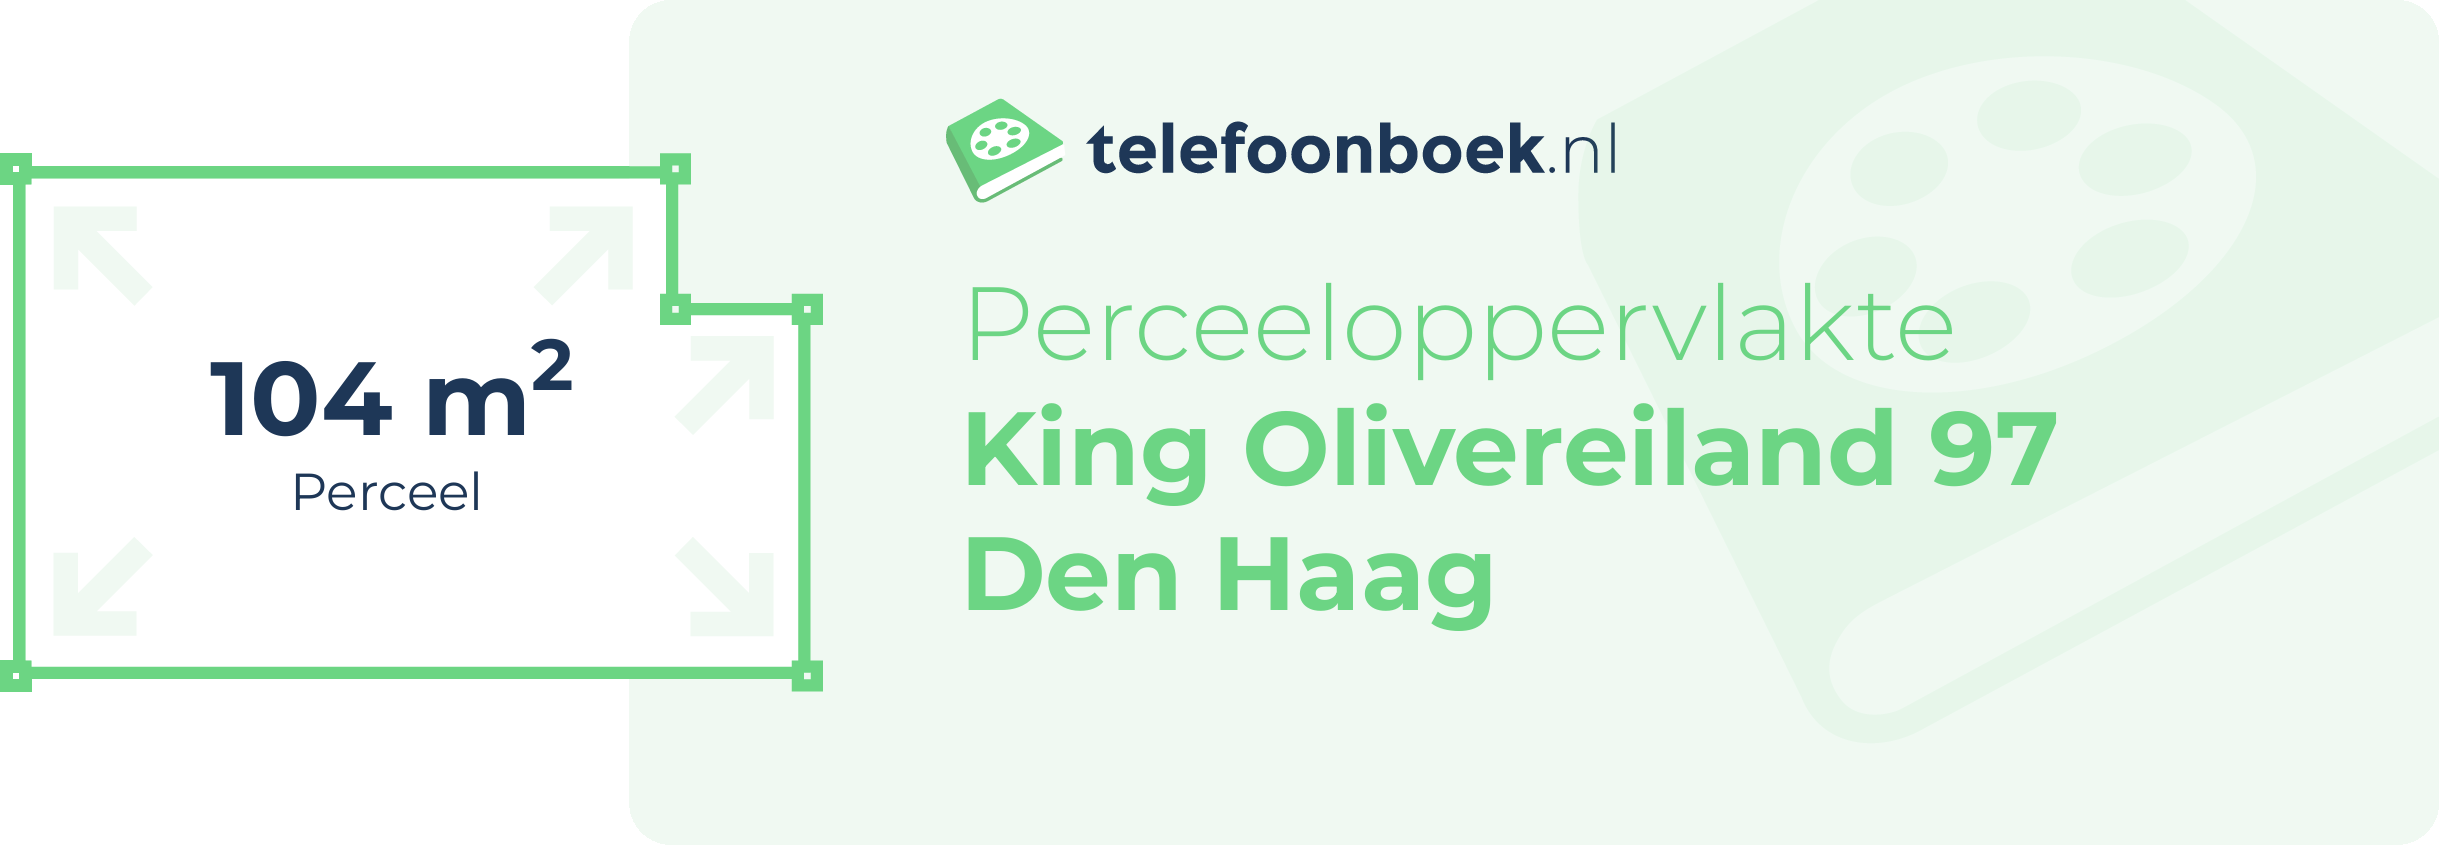 Perceeloppervlakte King Olivereiland 97 Den Haag